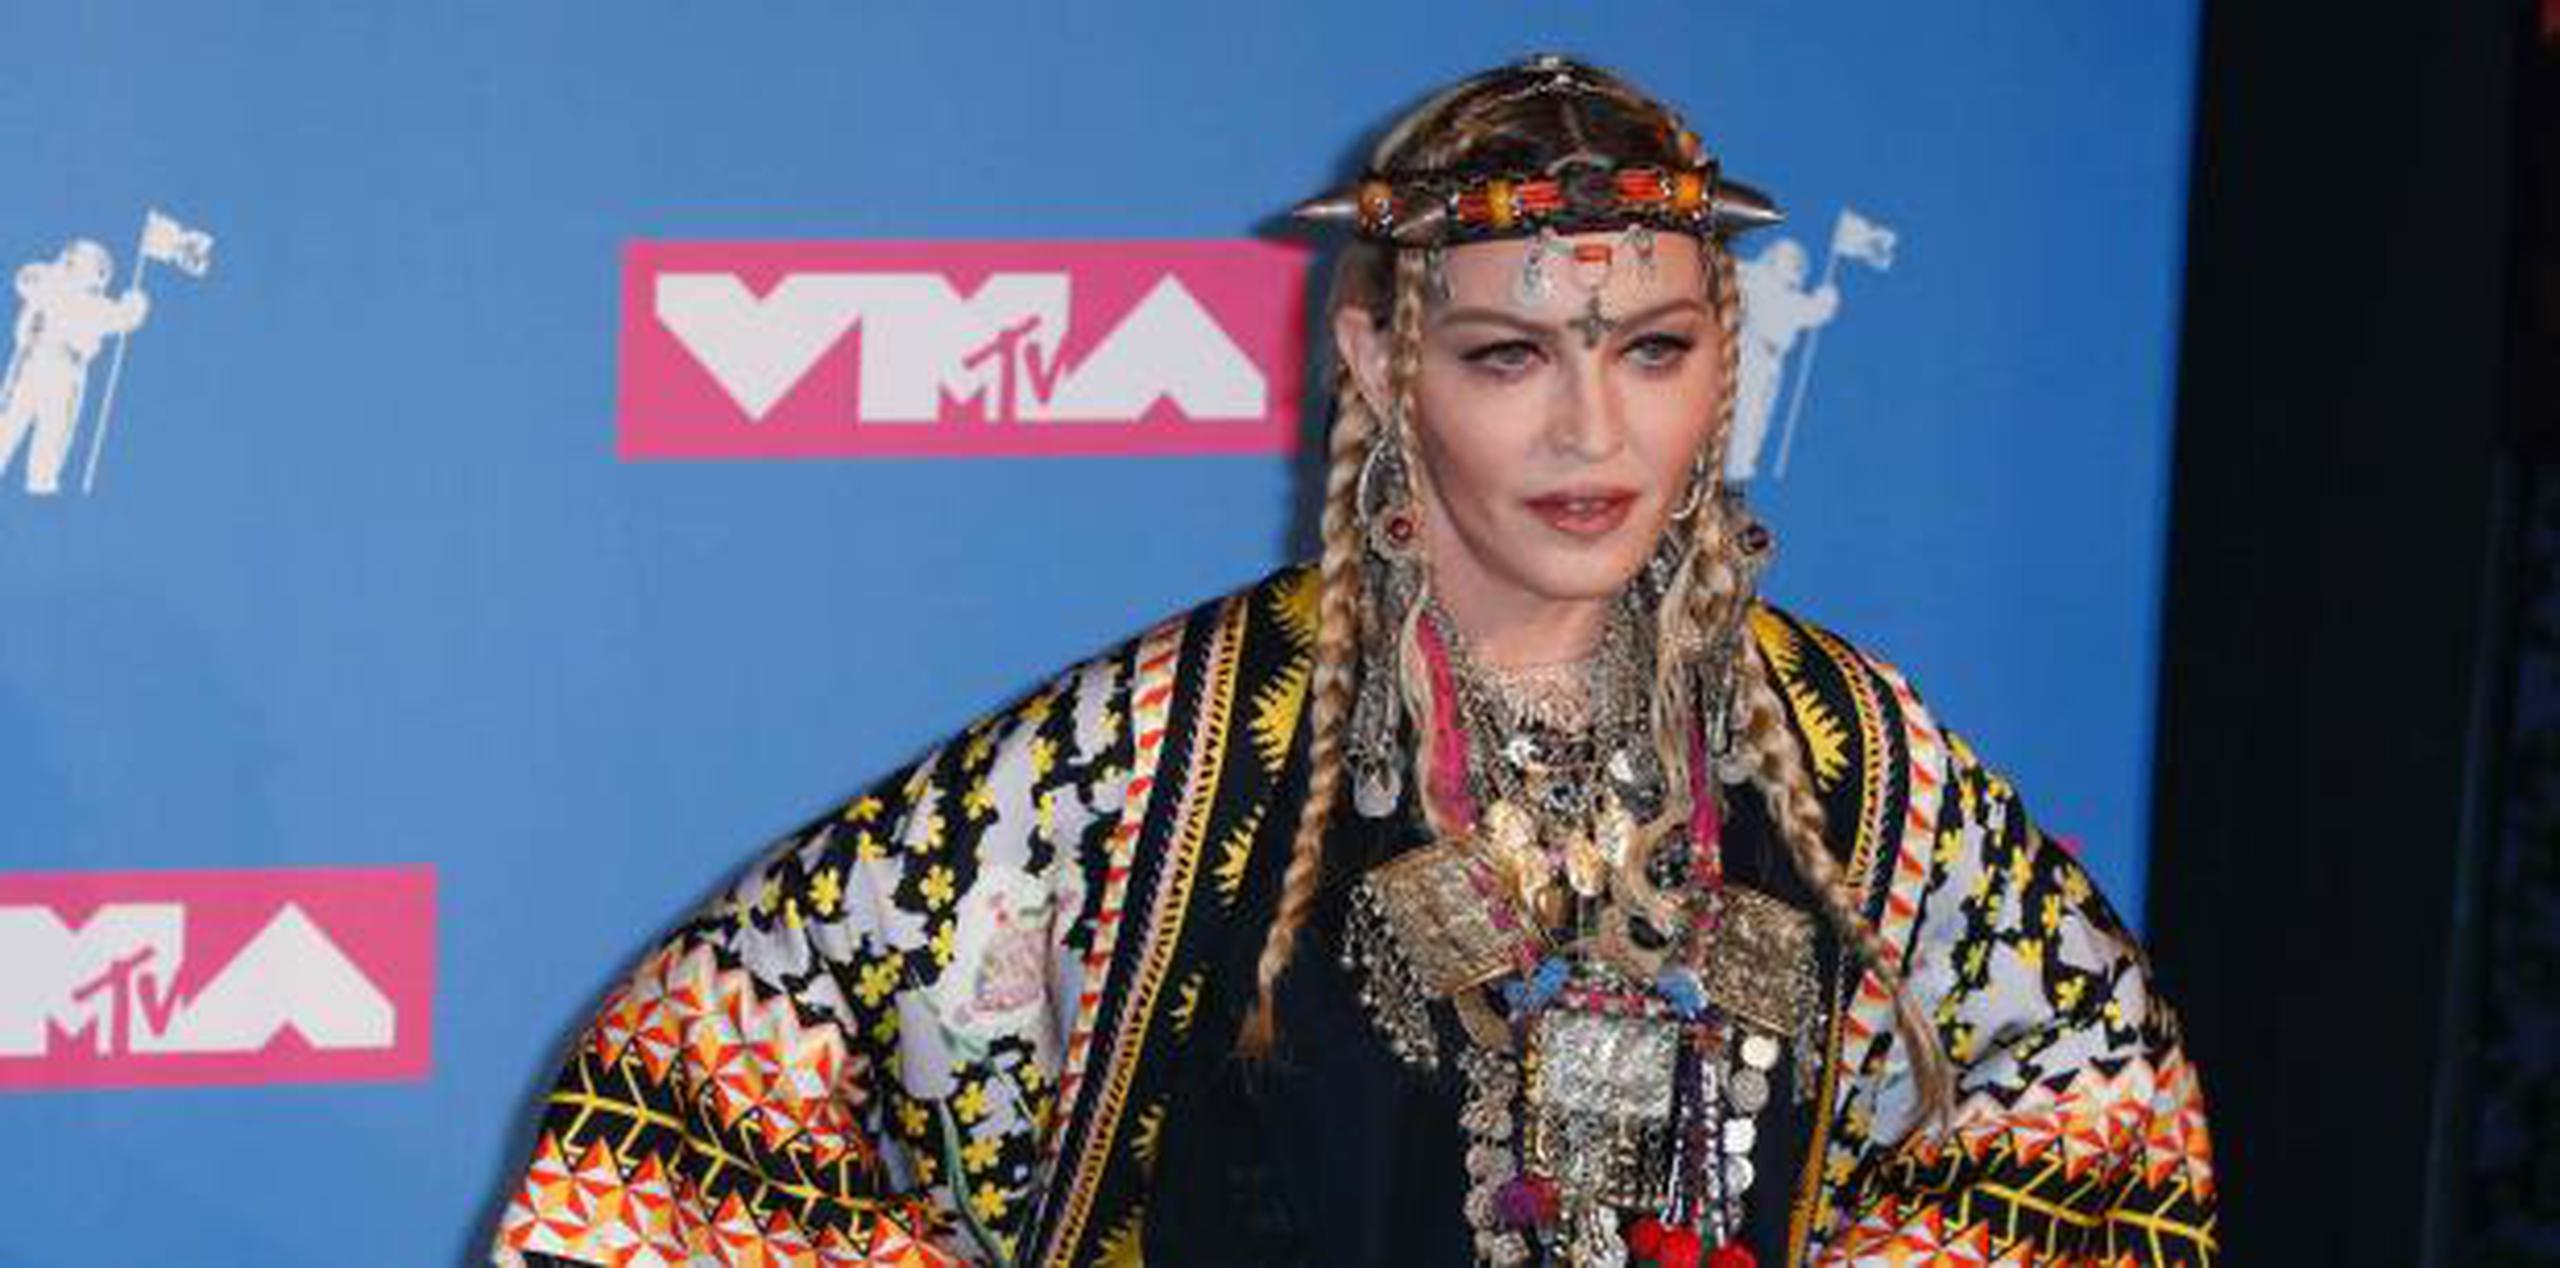 Del contenido del disco poco se sabe, aunque Madonna ha ido desvelando en los últimos meses su amistad con algunos fadistas y otros músicos portugueses. (EFE)